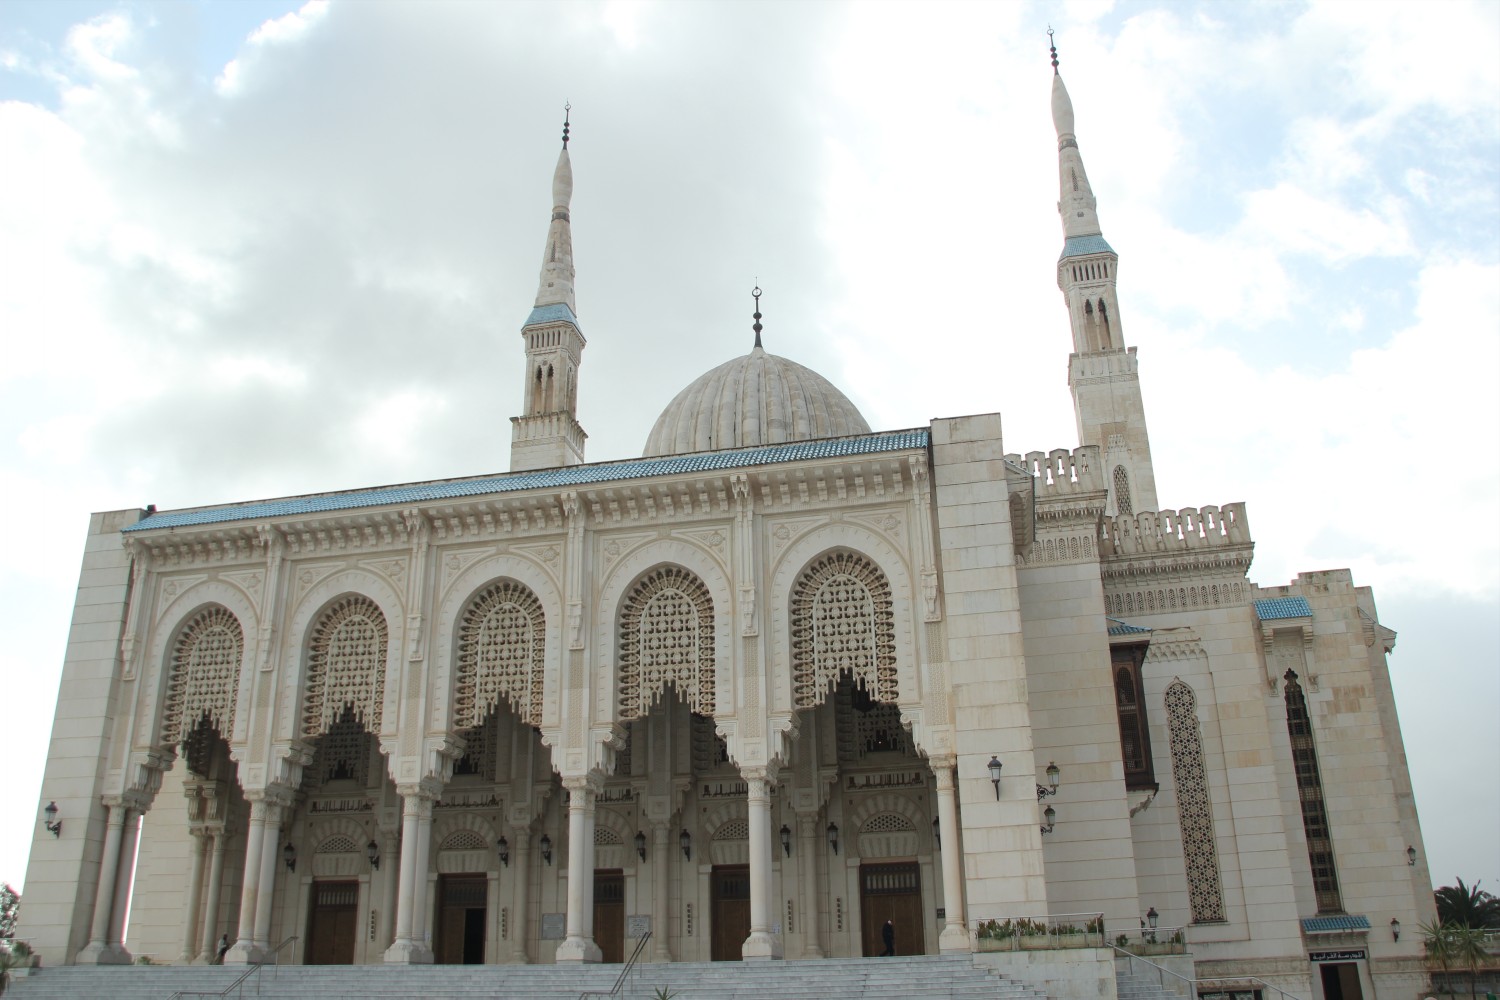 El Emir Abdelkader Mosque